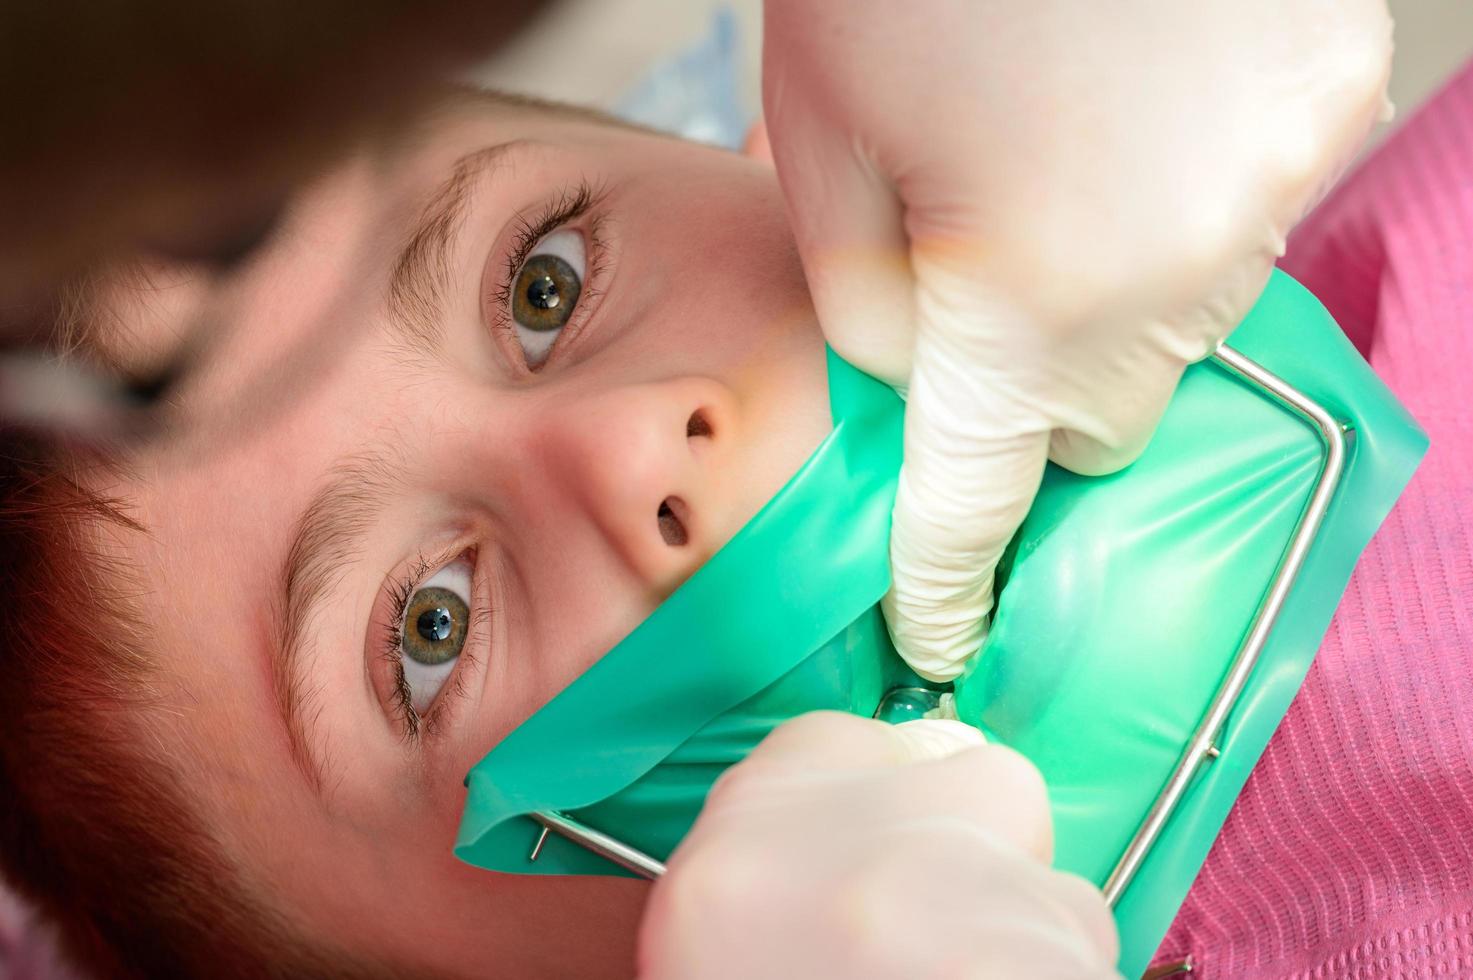 de tandarts behandelt de kind tand gebruik makend van een rubber dam. foto